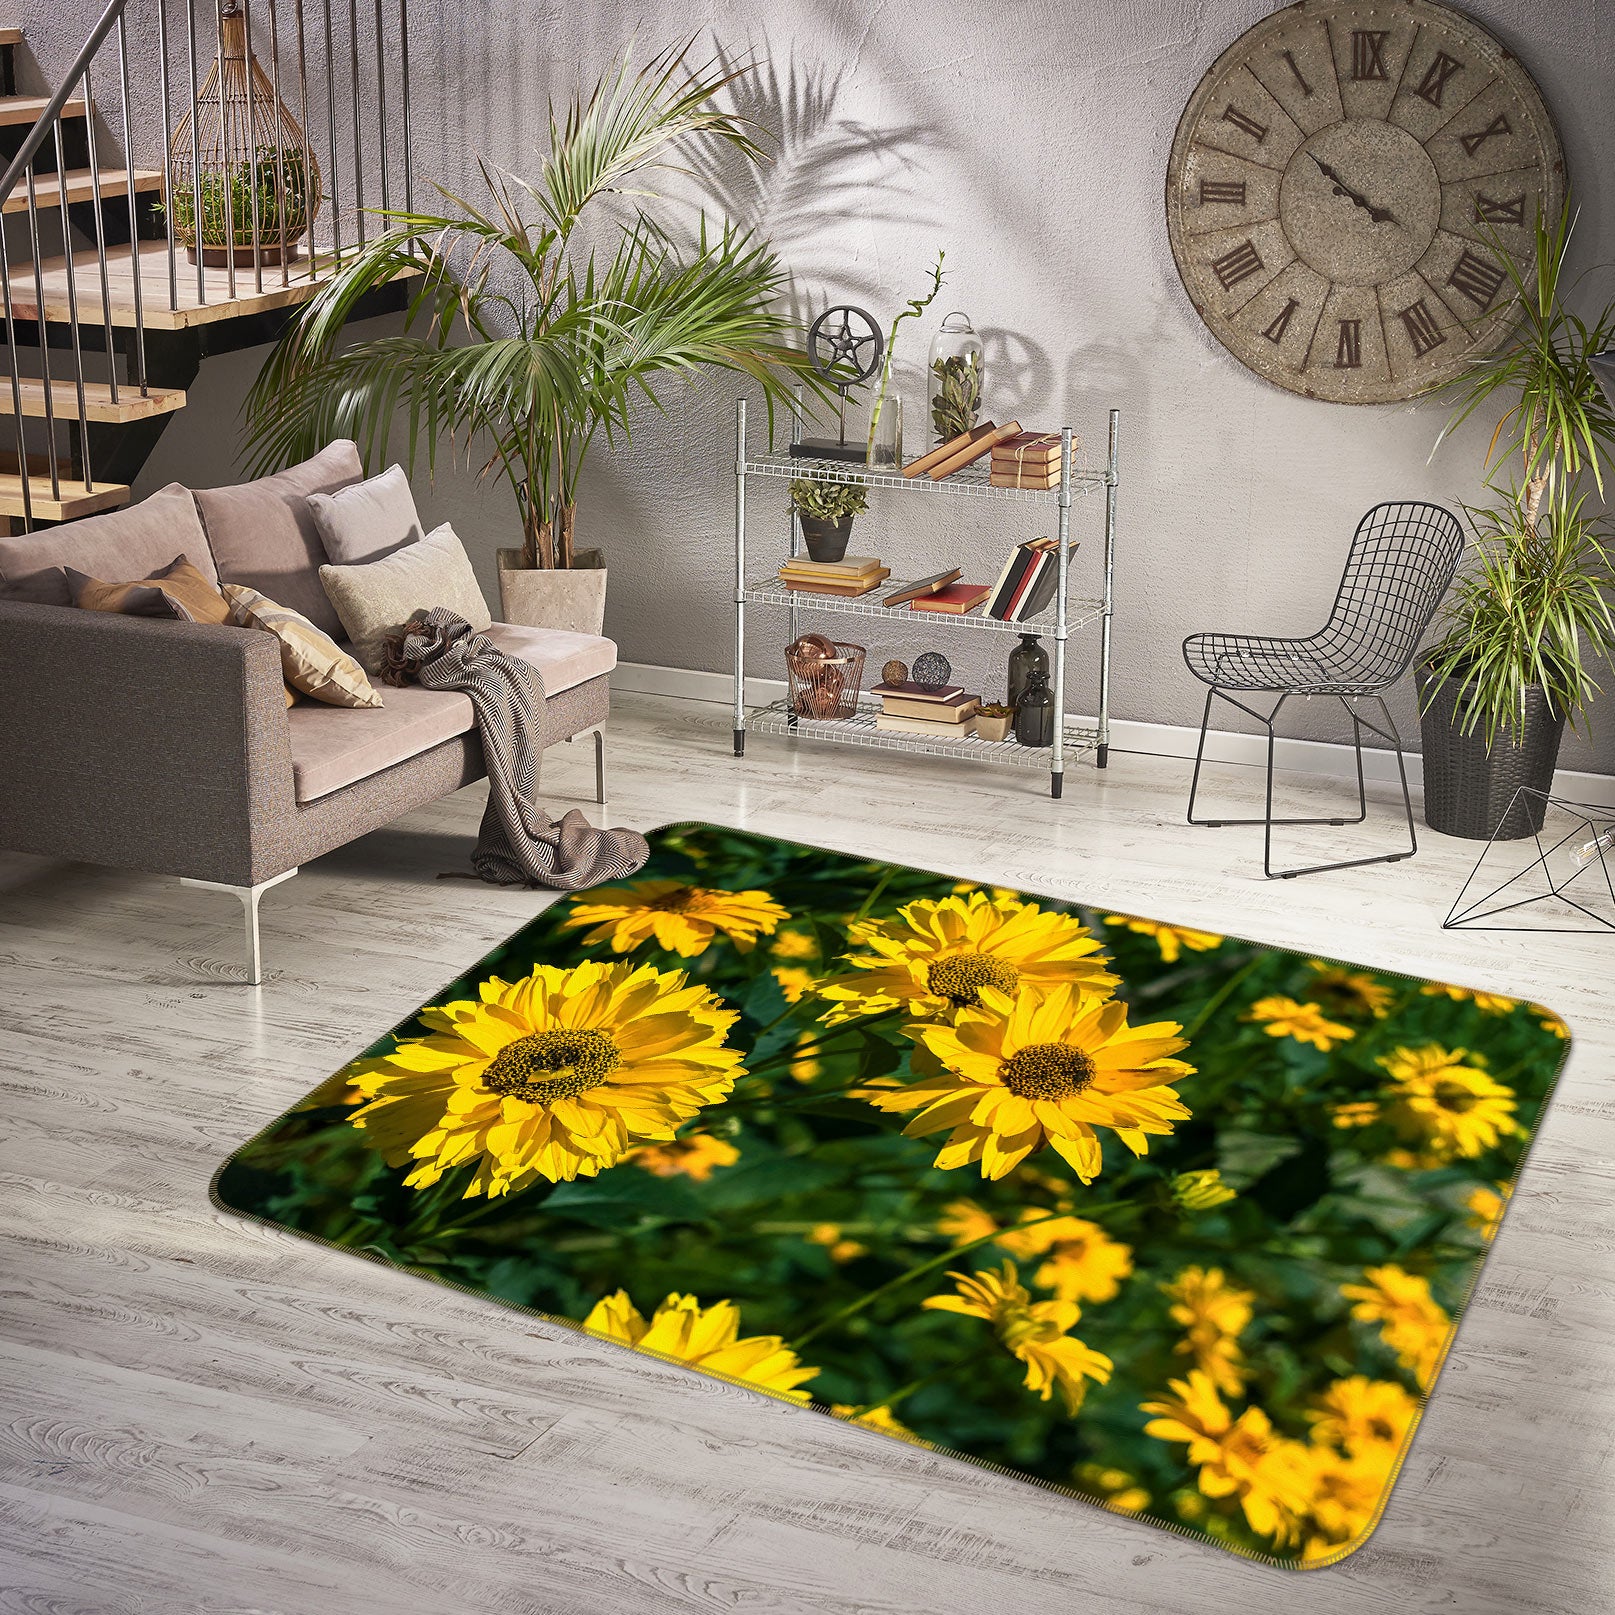 3D Sunflower Field 1032 Jerry LoFaro Rug Non Slip Rug Mat